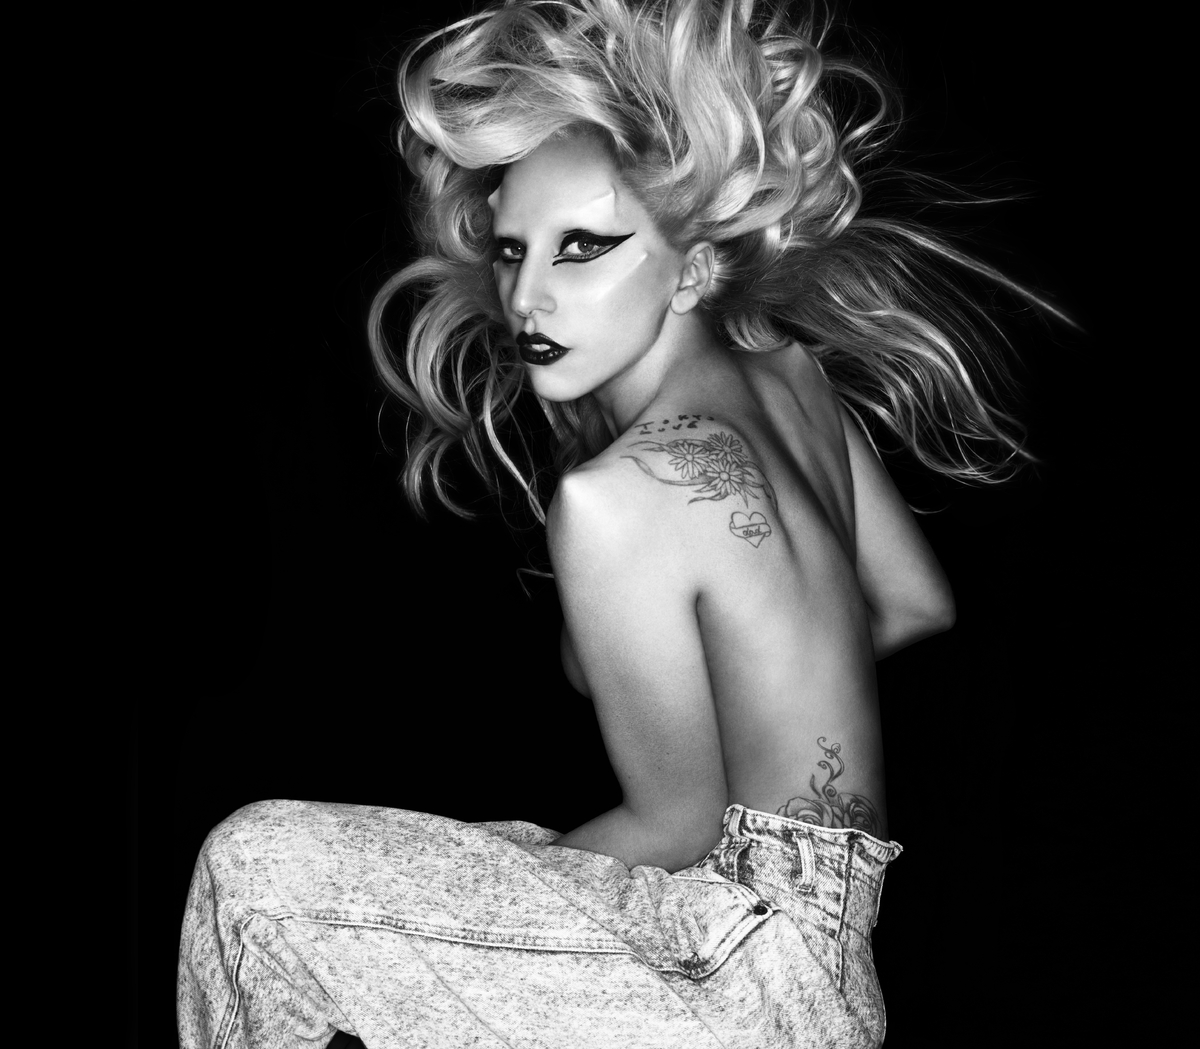 Fotografia em preto e branco. A imagem mostra a cantora Lady Gaga de lado, sem sutiã, mas escondendo os seios com o próprio corpo. Ela está com os cabelos para cima, maquiagem com delineador, e usa calça. Ela olha diretamente para a câmera e tem próteses no rosto, imitando chifres.